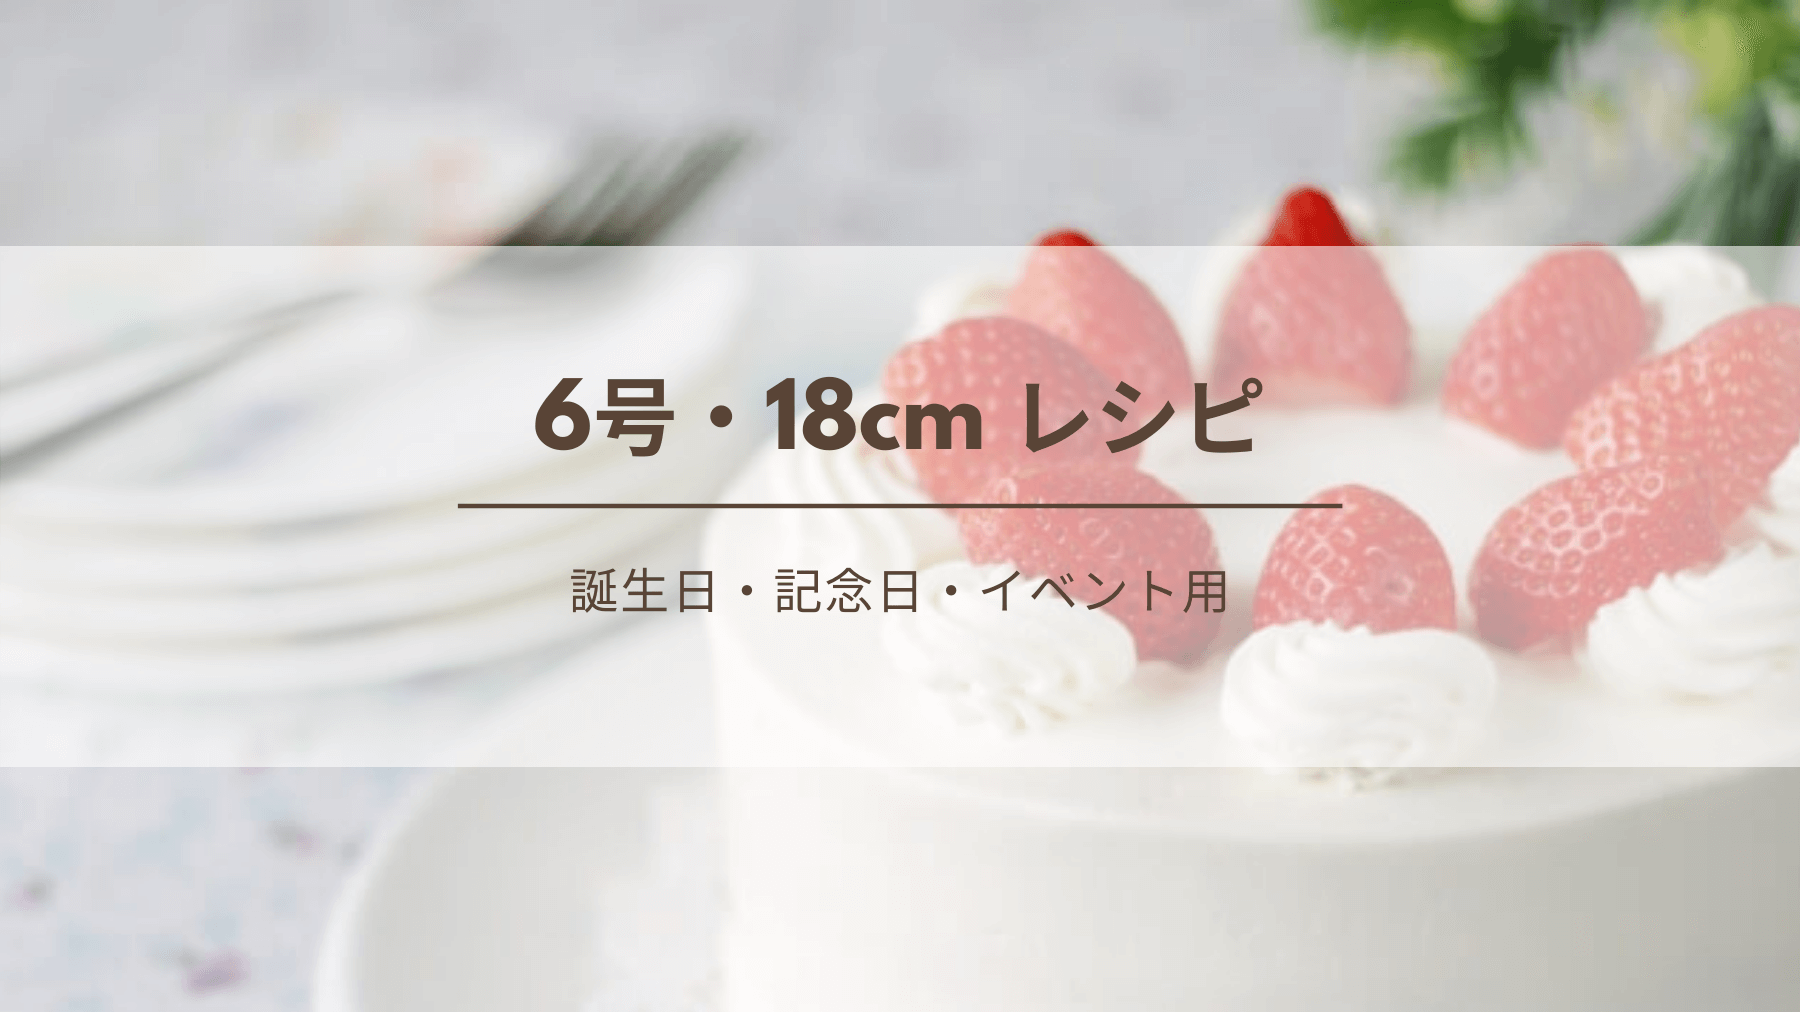 6号 18cm デコレーションケーキのレシピ 生クリームの必要量 誕生日 記念日 イベント用 Kitchen Report キッチンレポ